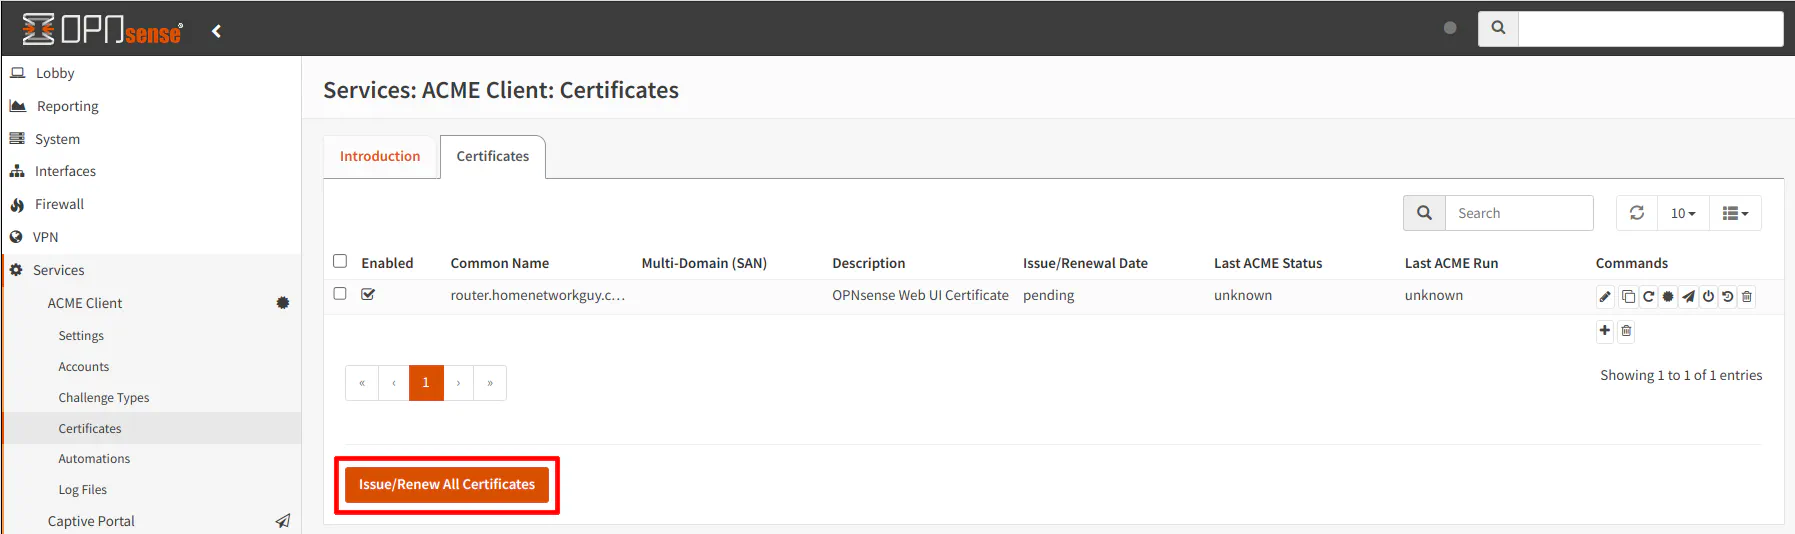 ACME Client Certificates